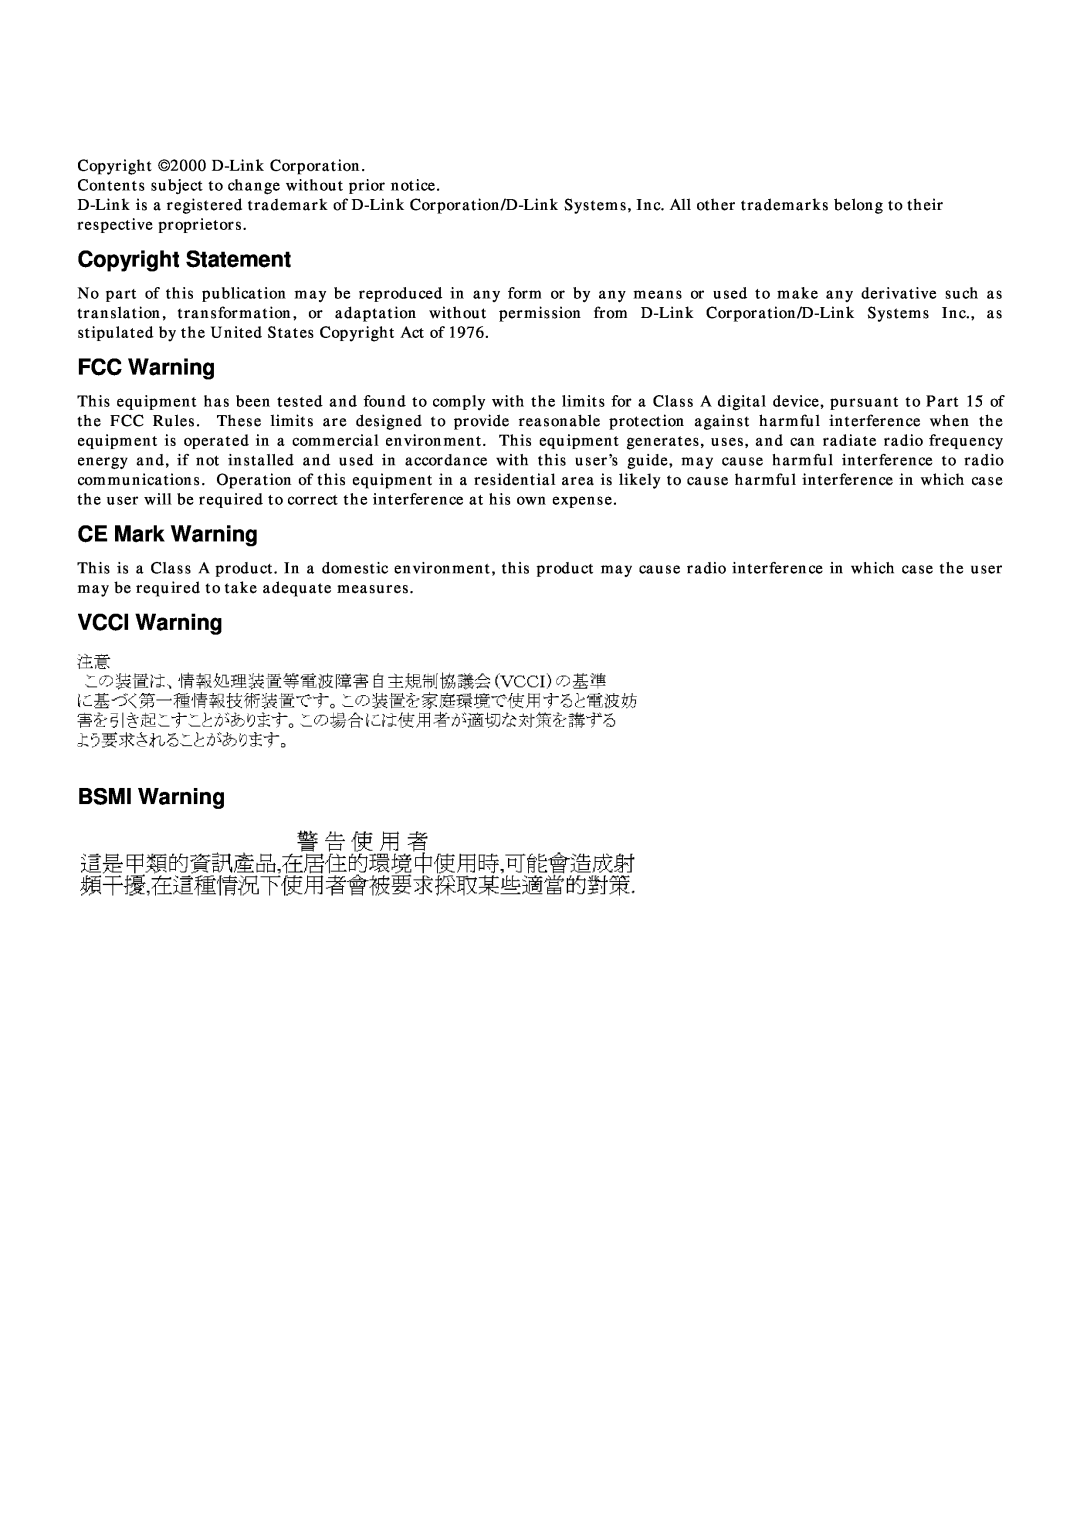 D-Link DES-3624 manual Copyright Statement, FCC Warning, CE Mark Warning, VCCI Warning BSMI Warning 